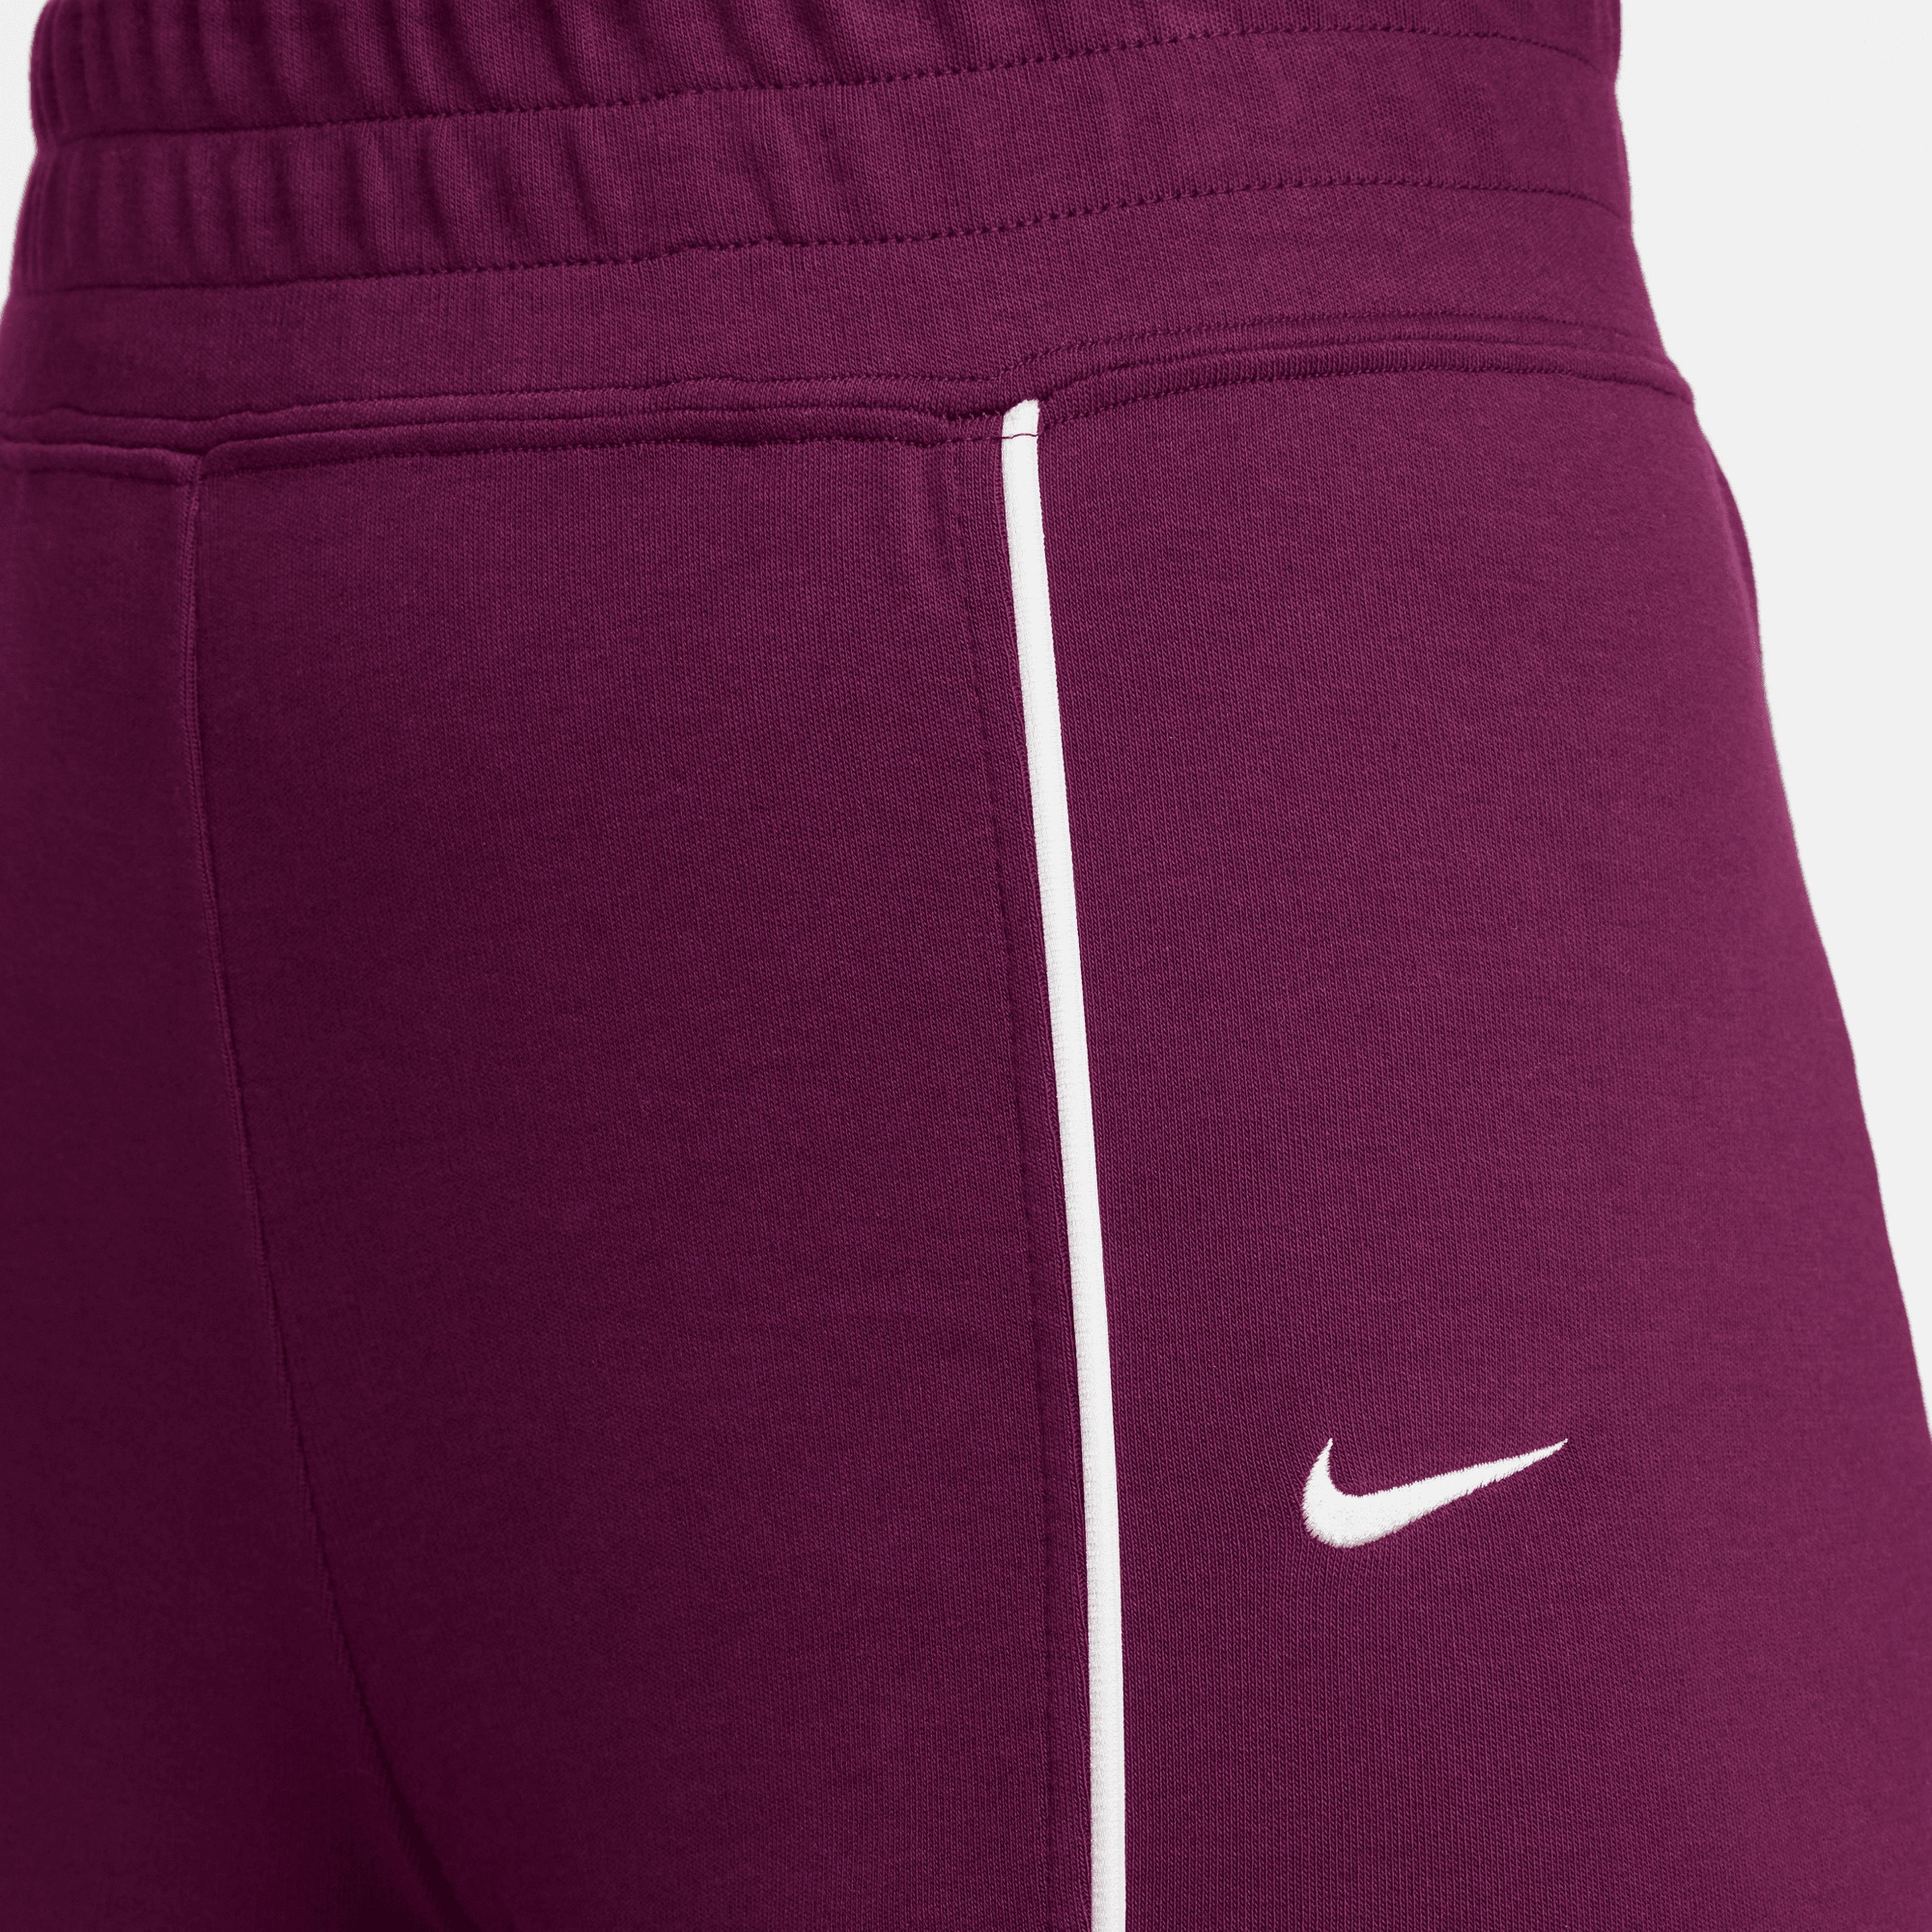 Nike Sportswear Collection Kadın Kırmızı Eşofman Altı